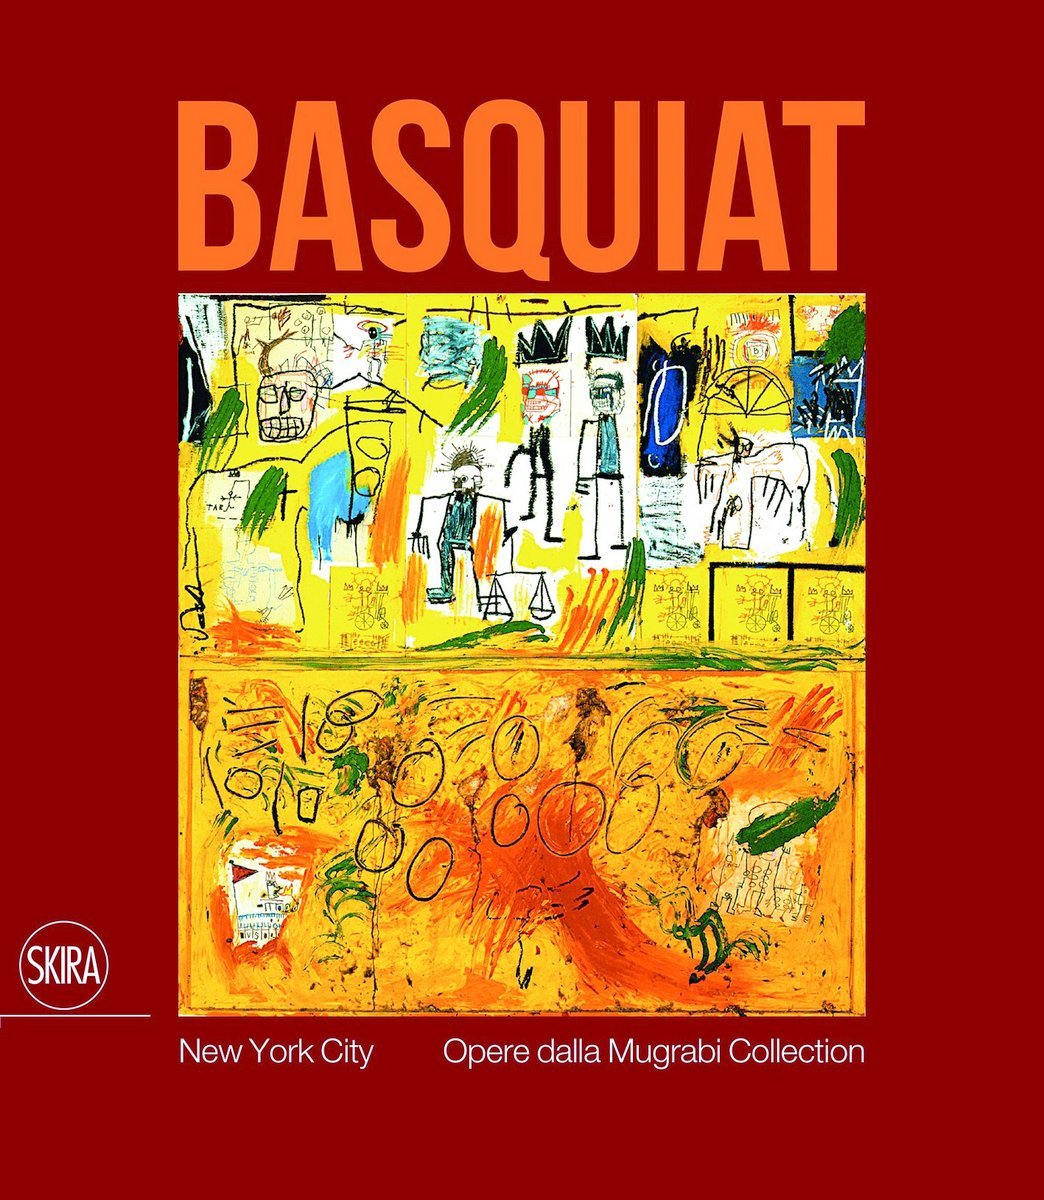 Jean-Michel Basquiat. New York City. Opere dalla Mugrabi Collection